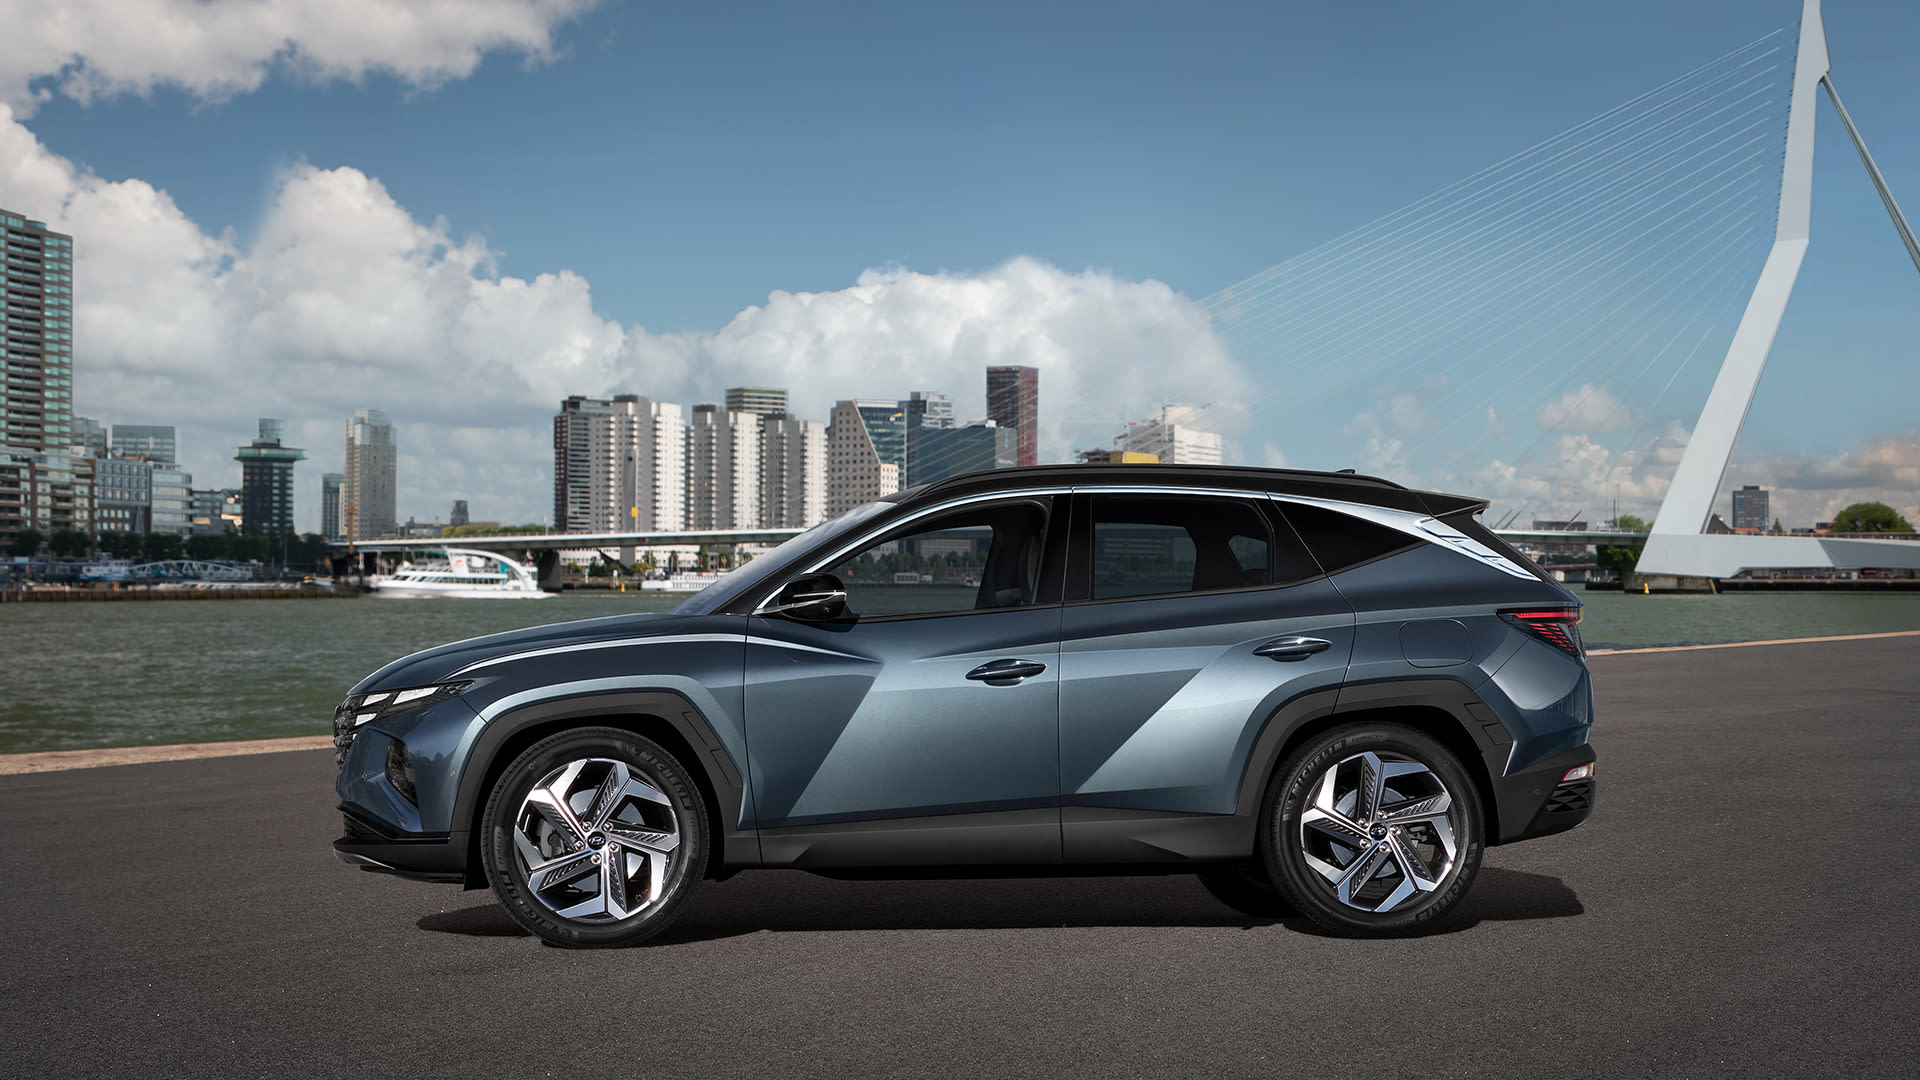 Zcela nový Hyundai Tucson: Technologický skvost s výjimečným designem